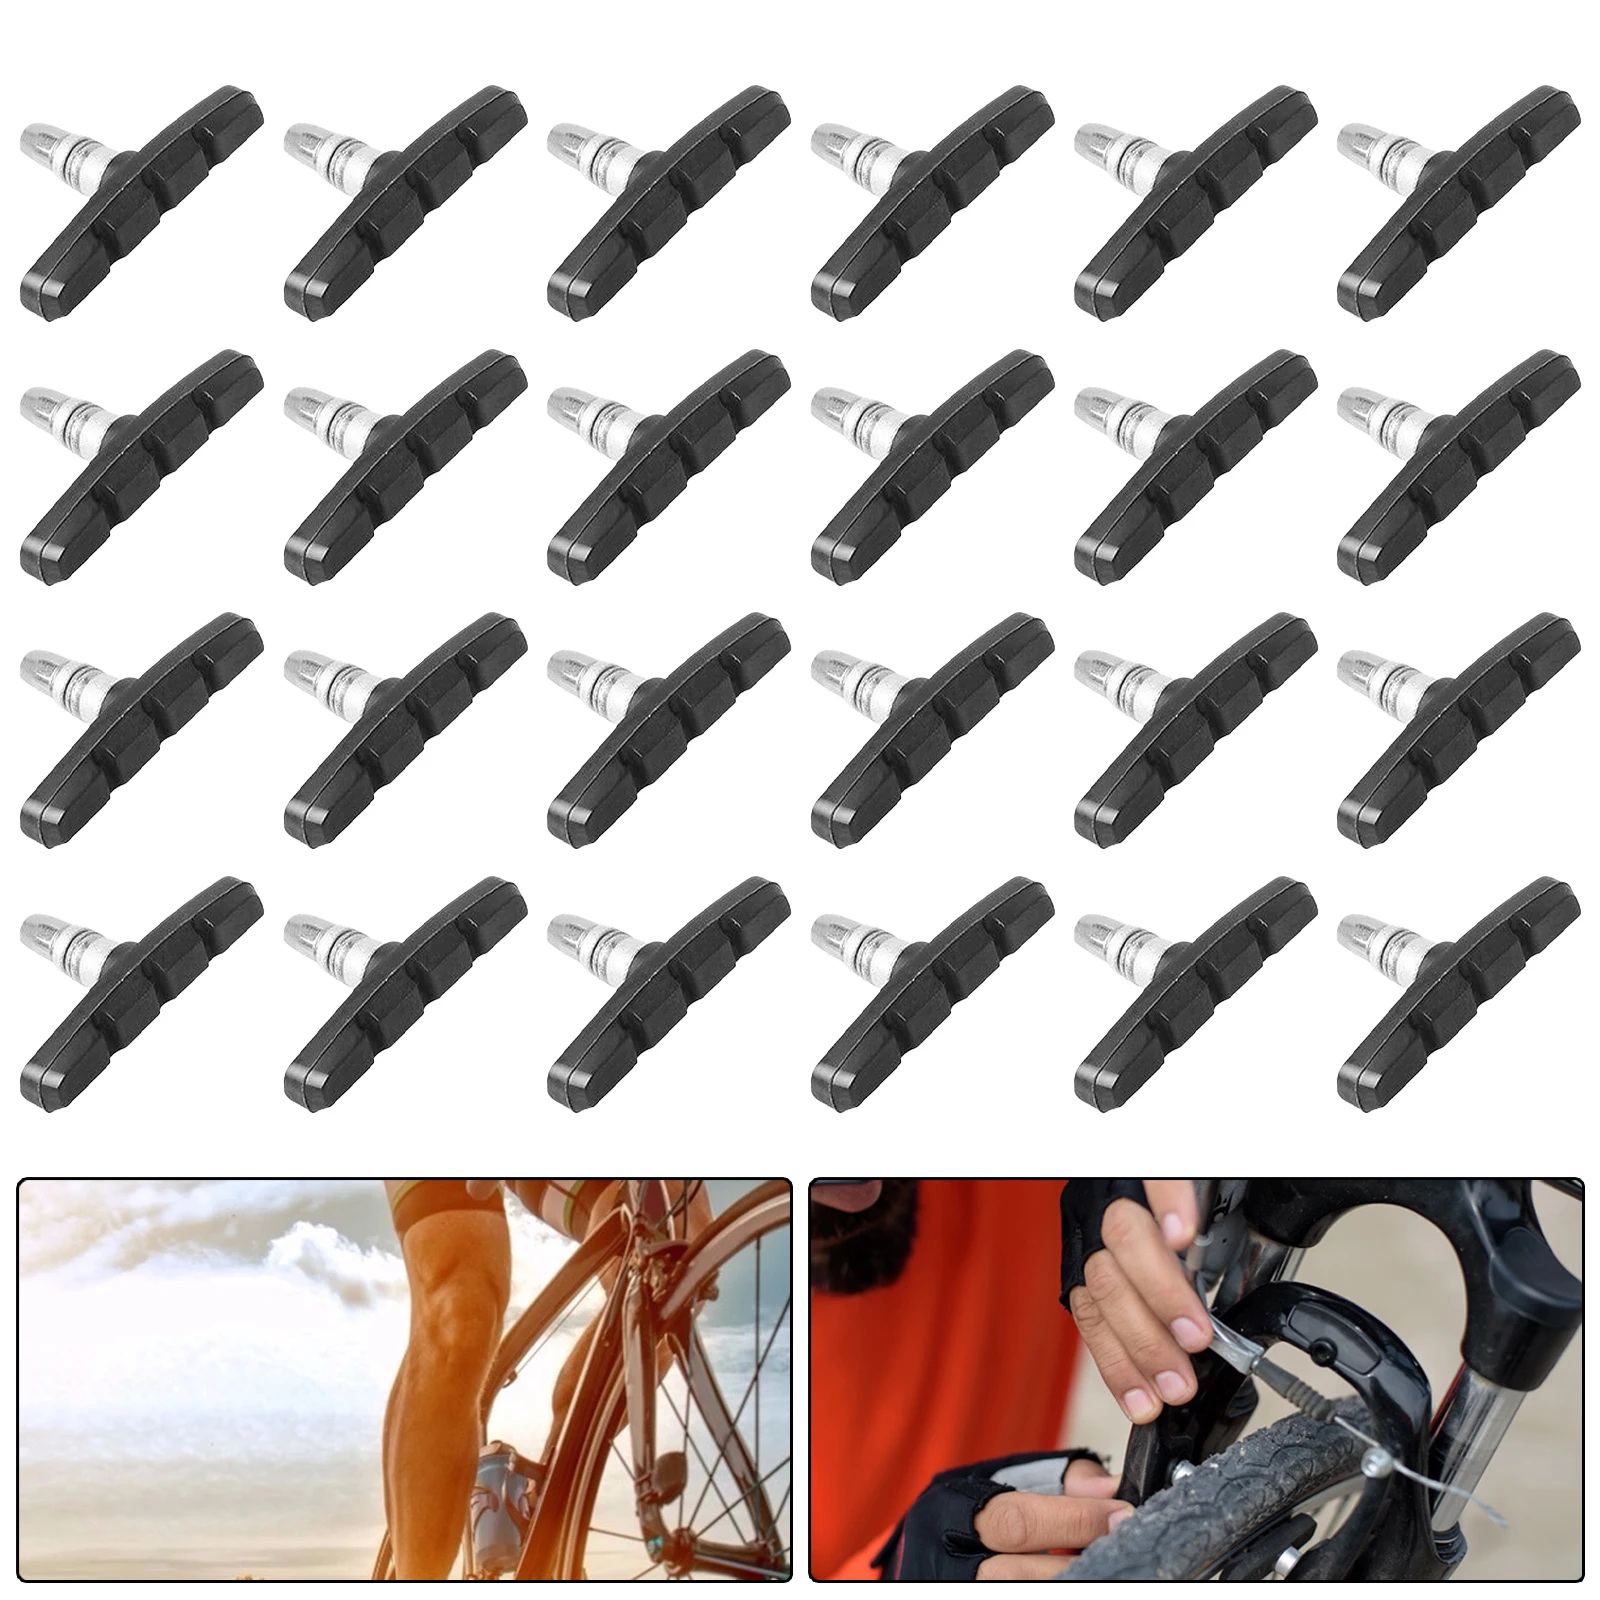 

12 пар тормозных колодок для горного велосипеда, велосипедные тормозные колодки, симметричные 70 мм резиновые блоки, V-тормозной держатель, ве...